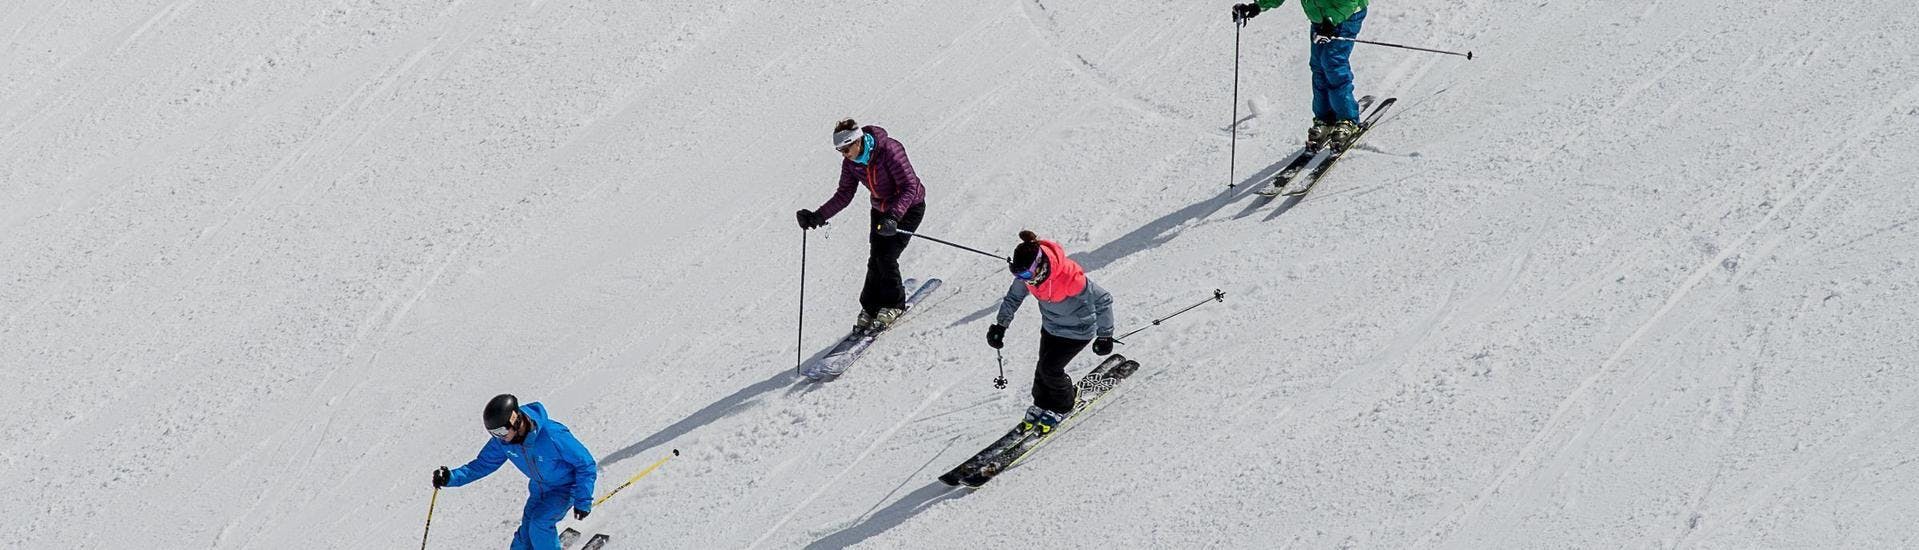 Tres esquiadores siguen a su monitor de esquí de la escuela de esquí Ski Cool, en el descenso de una pista de esquí durante una de sus clases particulares de esquí para adultos - Todos los niveles - Temporada baja, en la estación de esquí de Val Thorens.